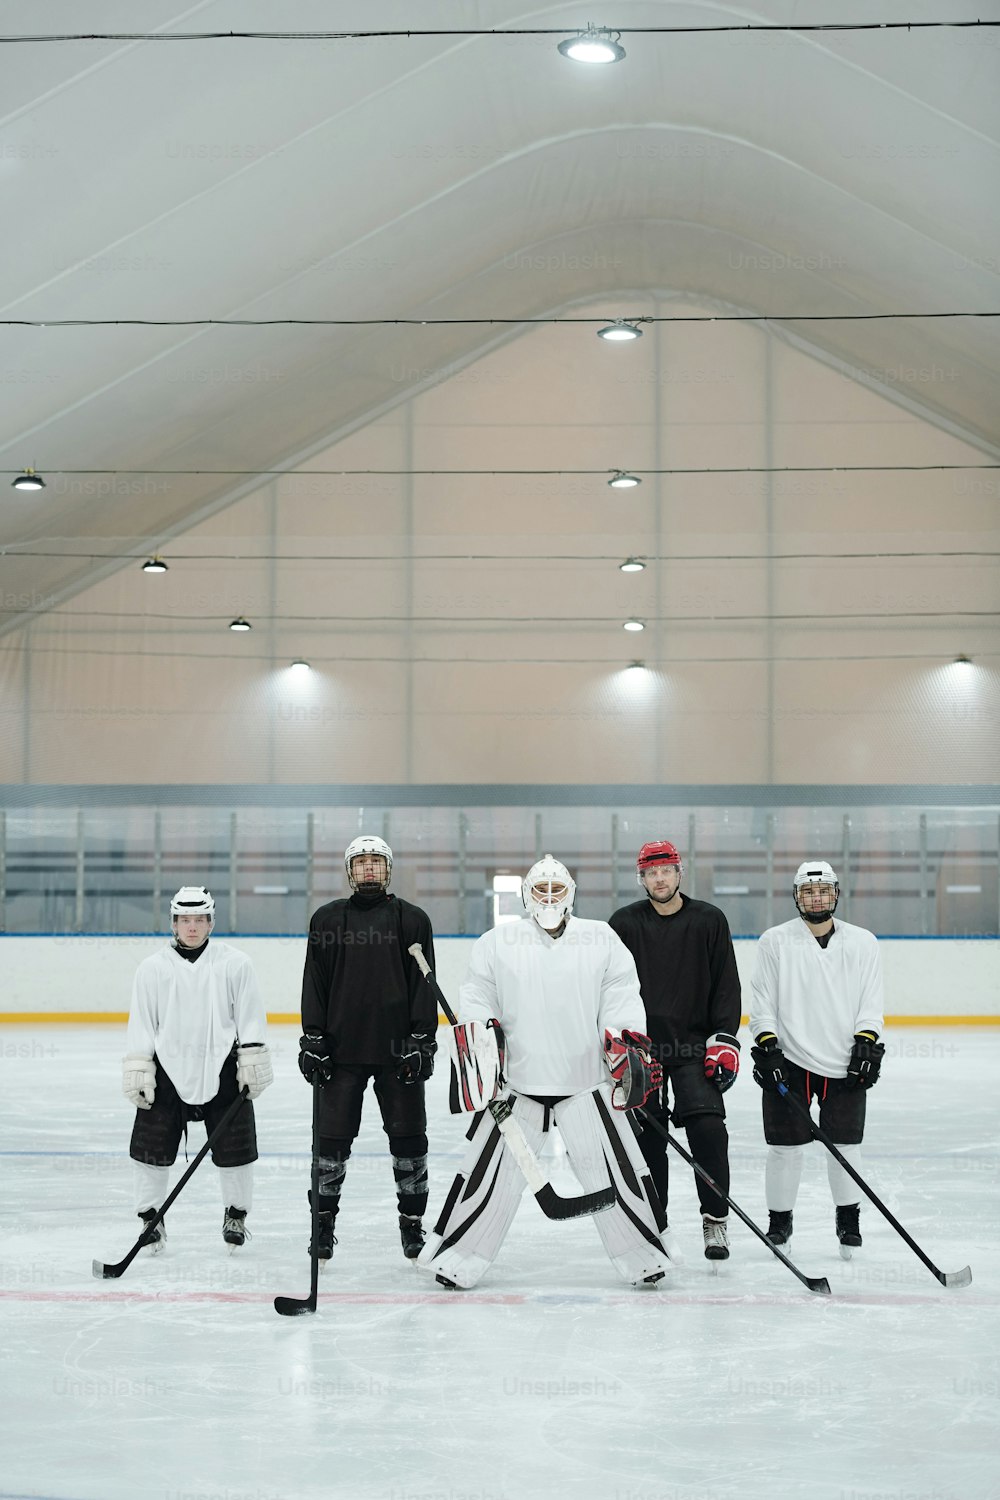 Groupe de joueurs de hockey et leur entraîneur en uniforme de sport, gants, patins et casques de protection debout sur la patinoire en attendant le jeu